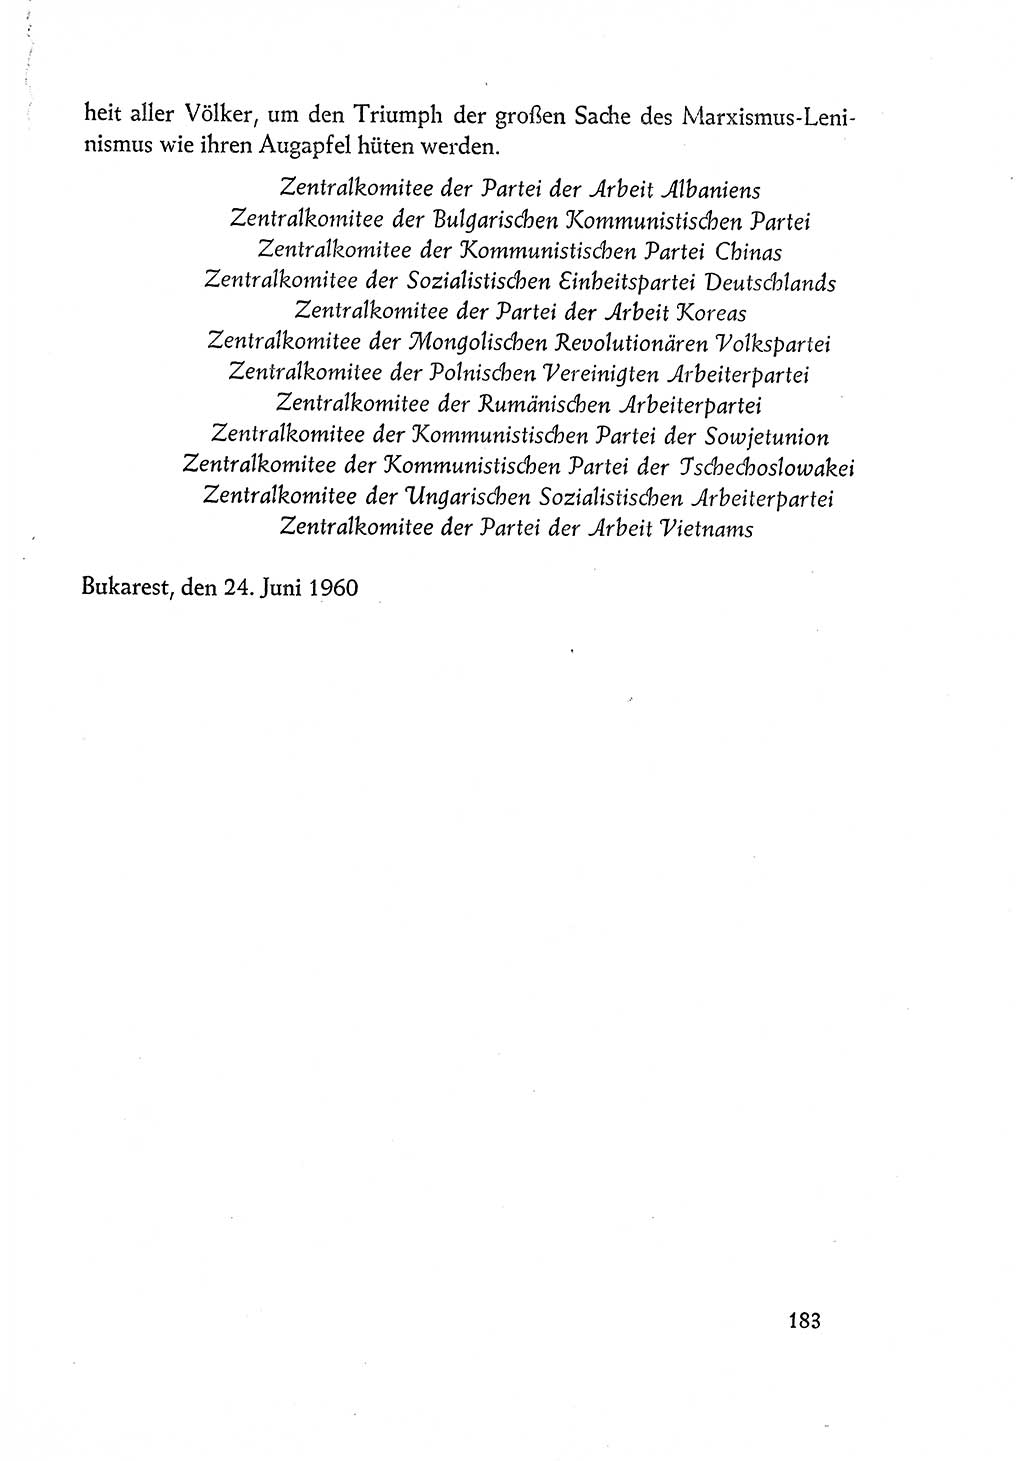 Dokumente der Sozialistischen Einheitspartei Deutschlands (SED) [Deutsche Demokratische Republik (DDR)] 1960-1961, Seite 183 (Dok. SED DDR 1960-1961, S. 183)